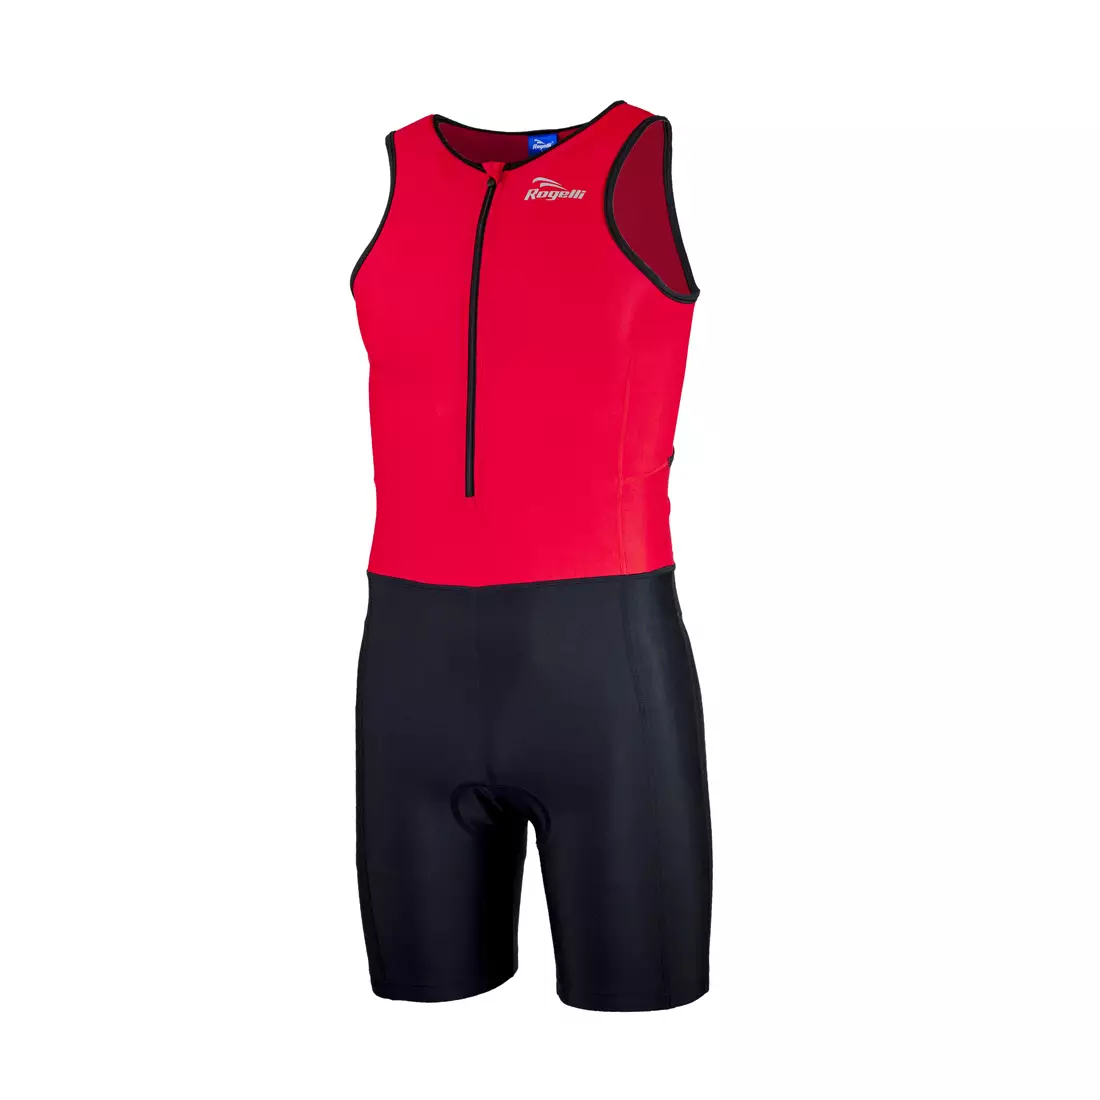 ROGELLI TRI FLORIDA 030.001 férfi triatlon ruha, piros és fekete